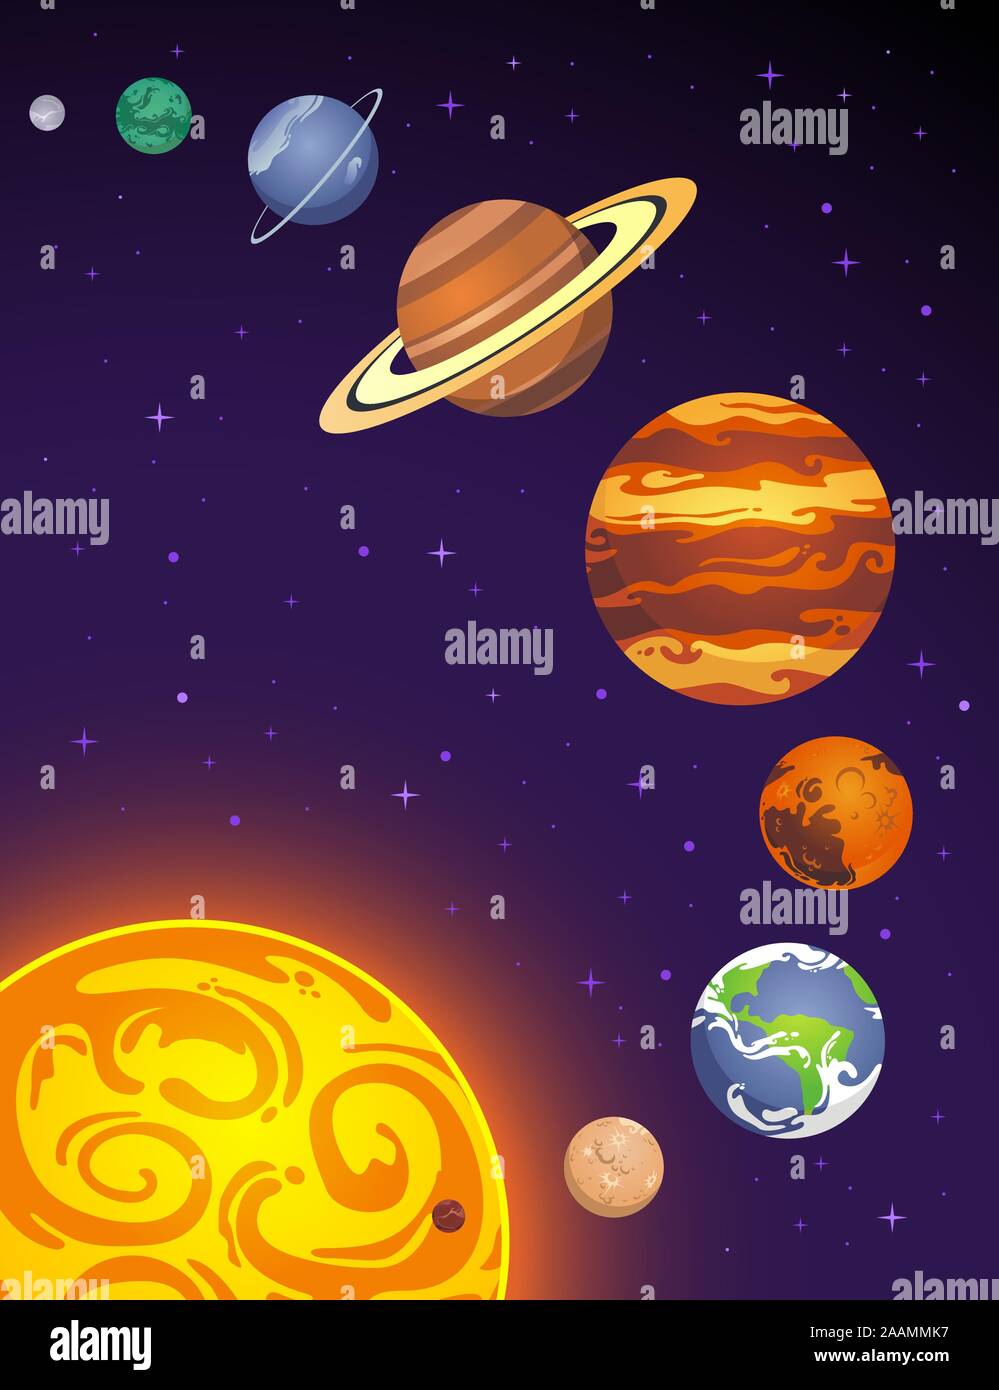 Planetas de dibujos animados con caras. emoji del carácter del planeta del sistema  solar, tierra, luna, sol y marte en el espacio ultraterrestre. astronomía para  niños vector set. ilustración universo cosmos planetario